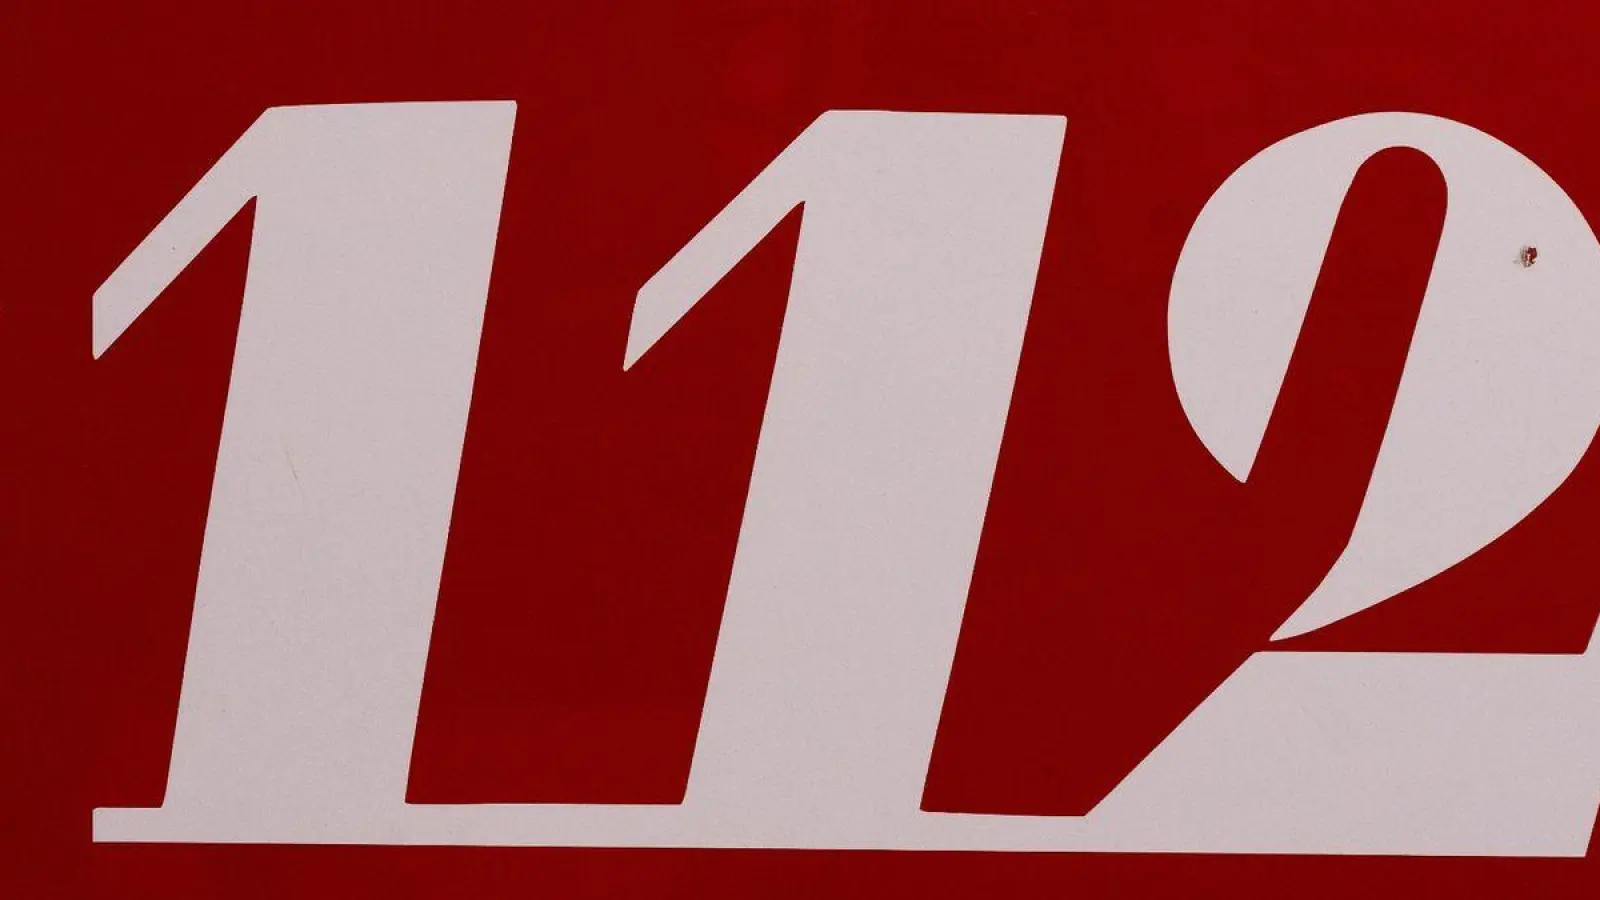 Der Notruf „112” ist auf einem Fahrzeug der Feuerwehr zu sehen. (Foto: Sven Hoppe/dpa/Symbolbild)